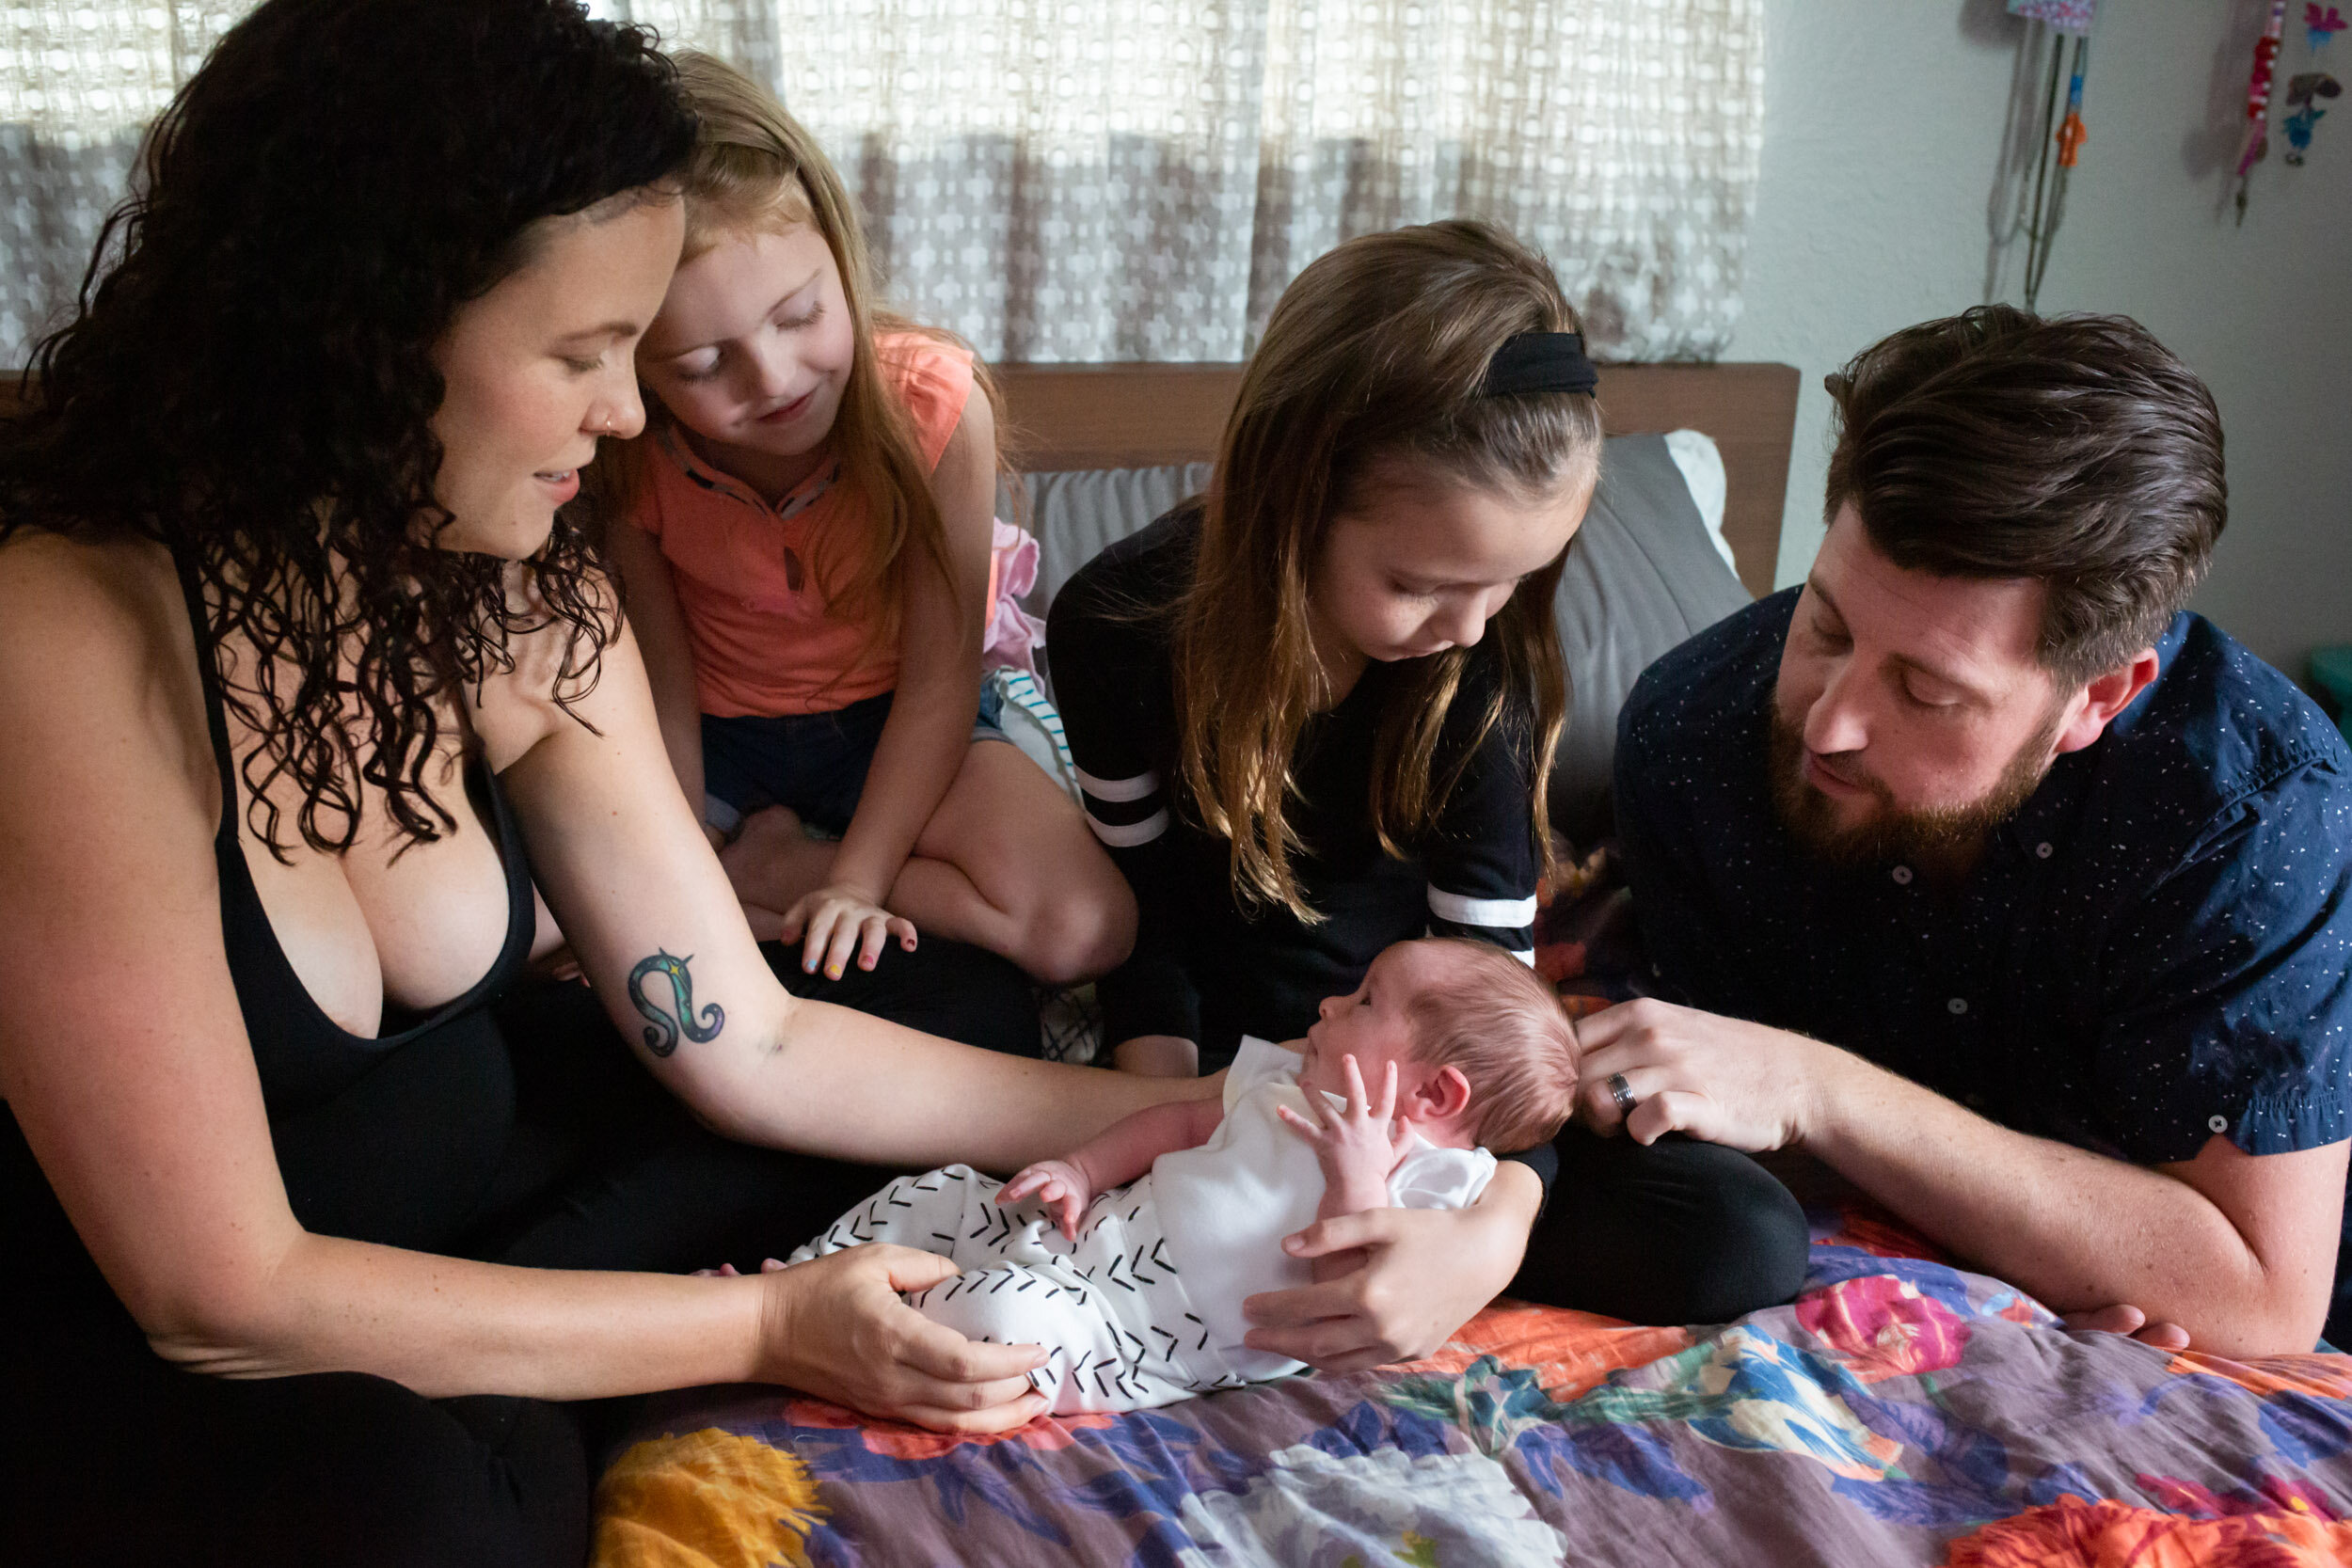 jacksonville family looks at newborn baby girl